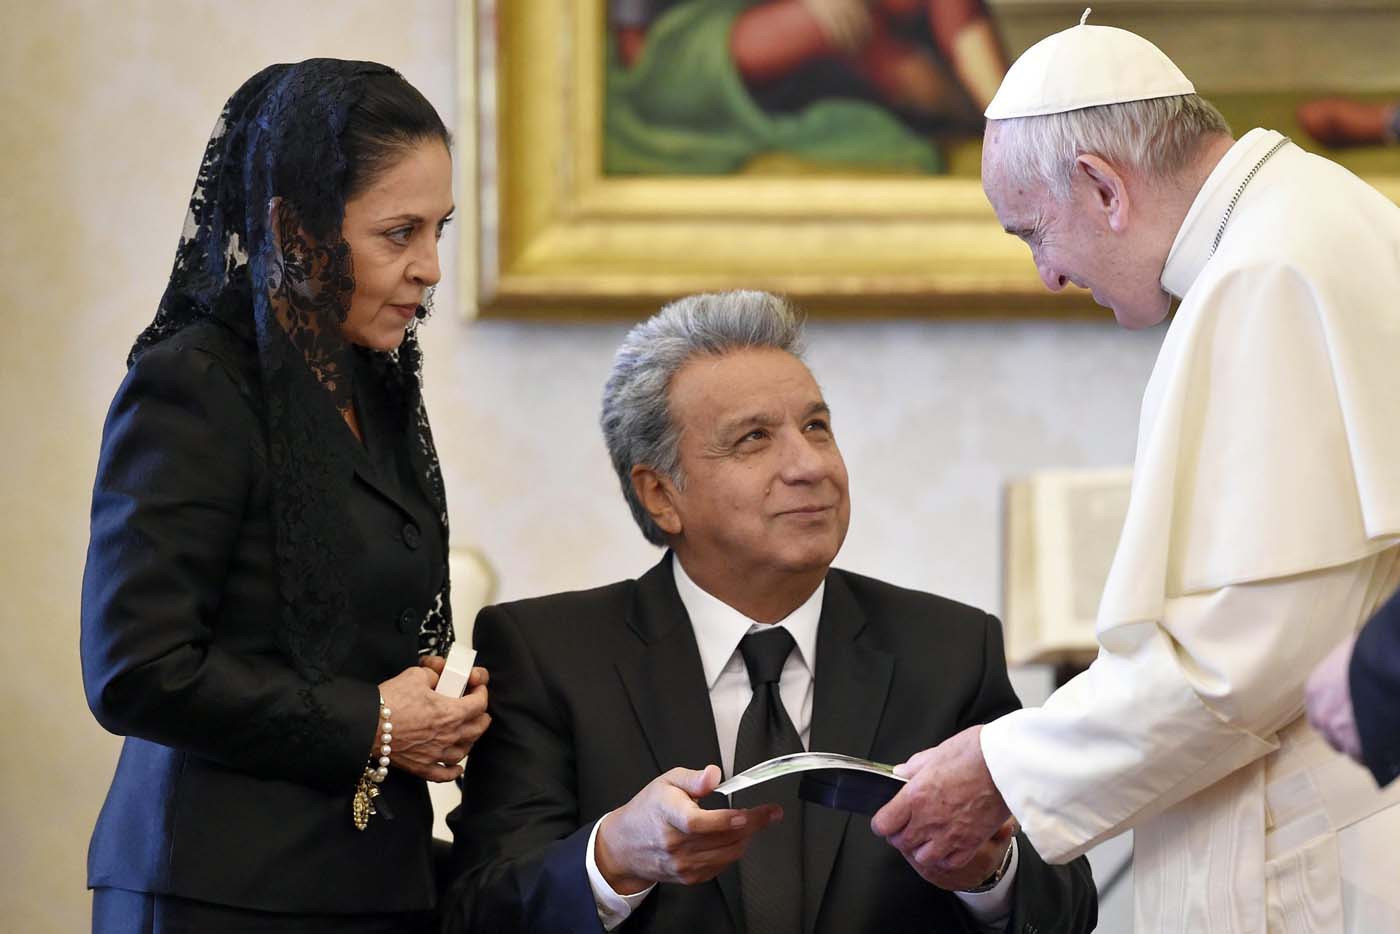 El Papa habla con el presidente de Ecuador de la Amazonía y de corrupción